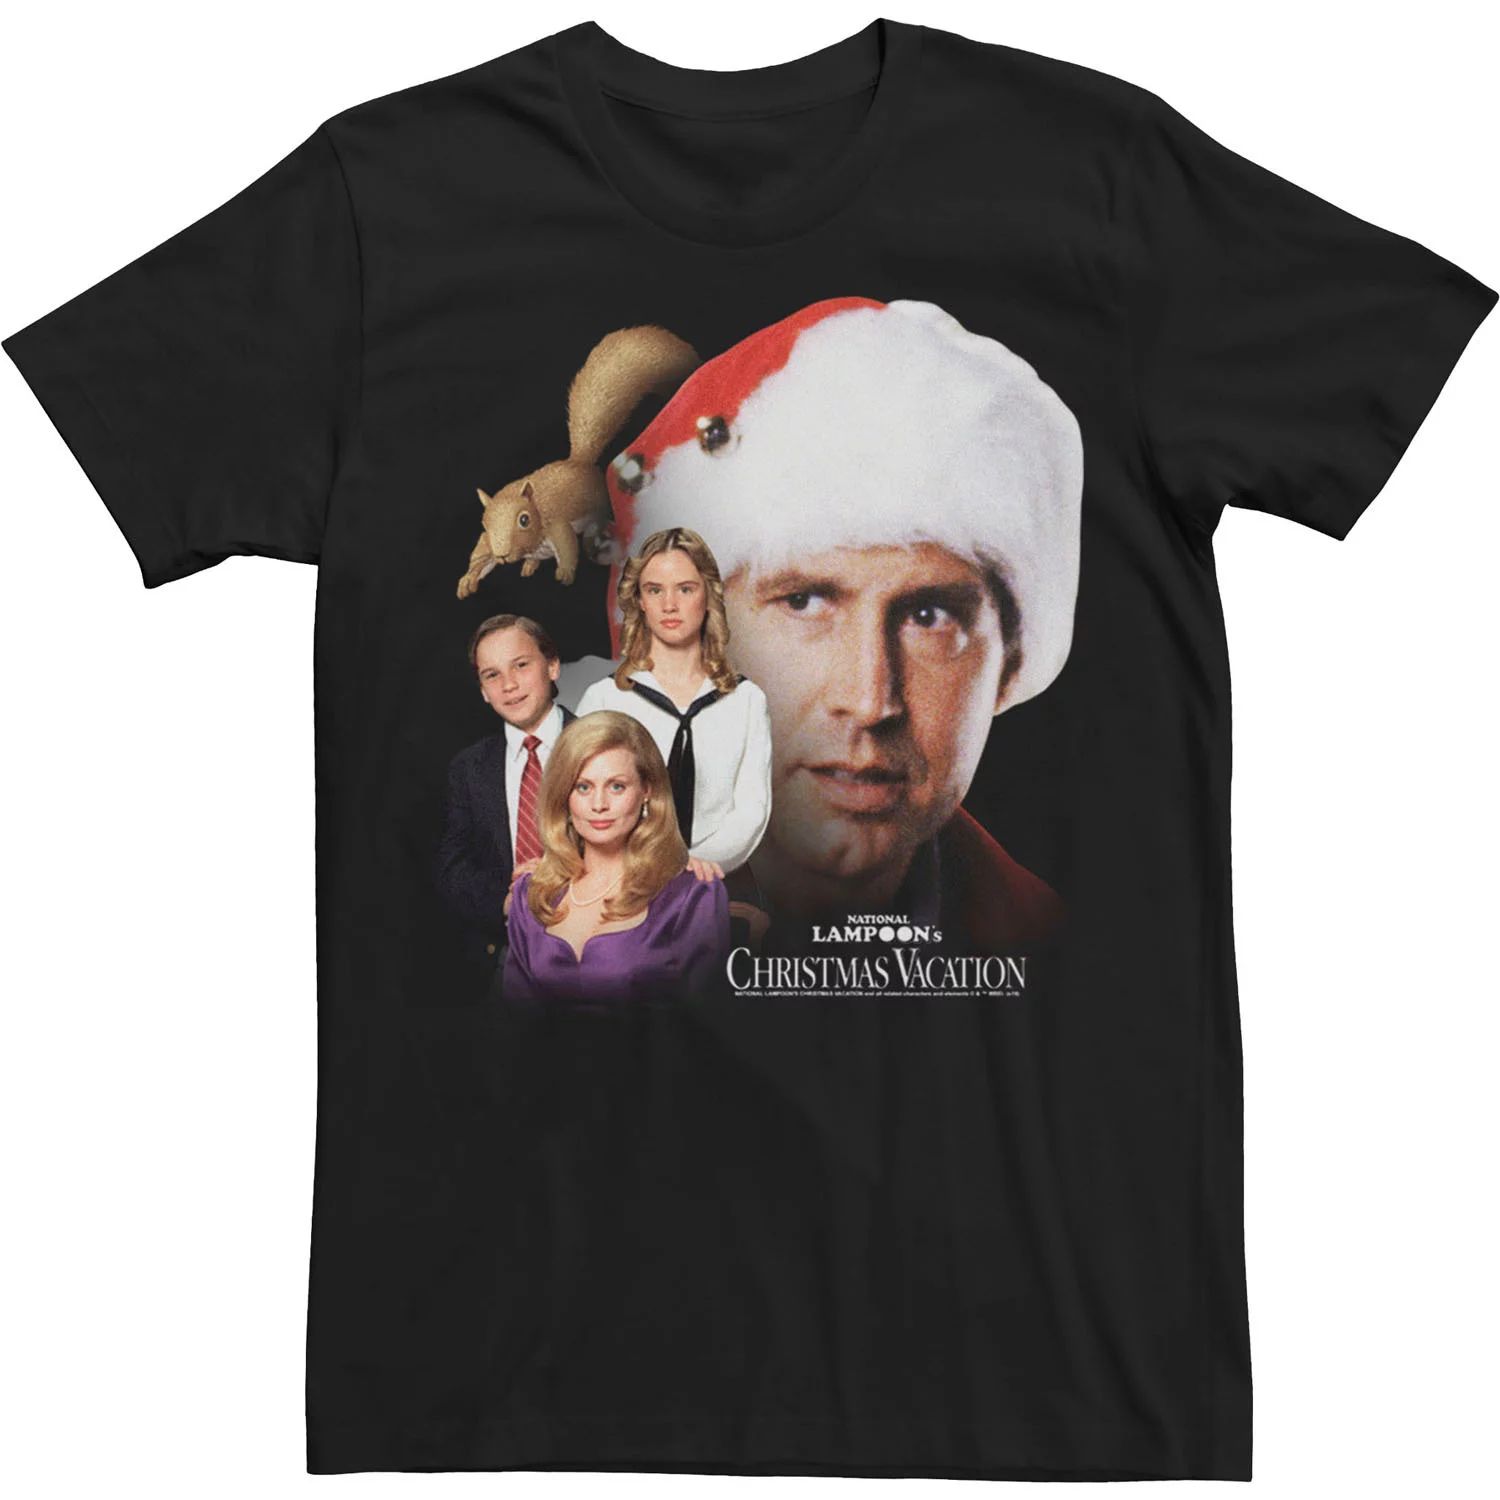 Мужская футболка National Lampoon для рождественских каникул с семейным портретом Licensed Character